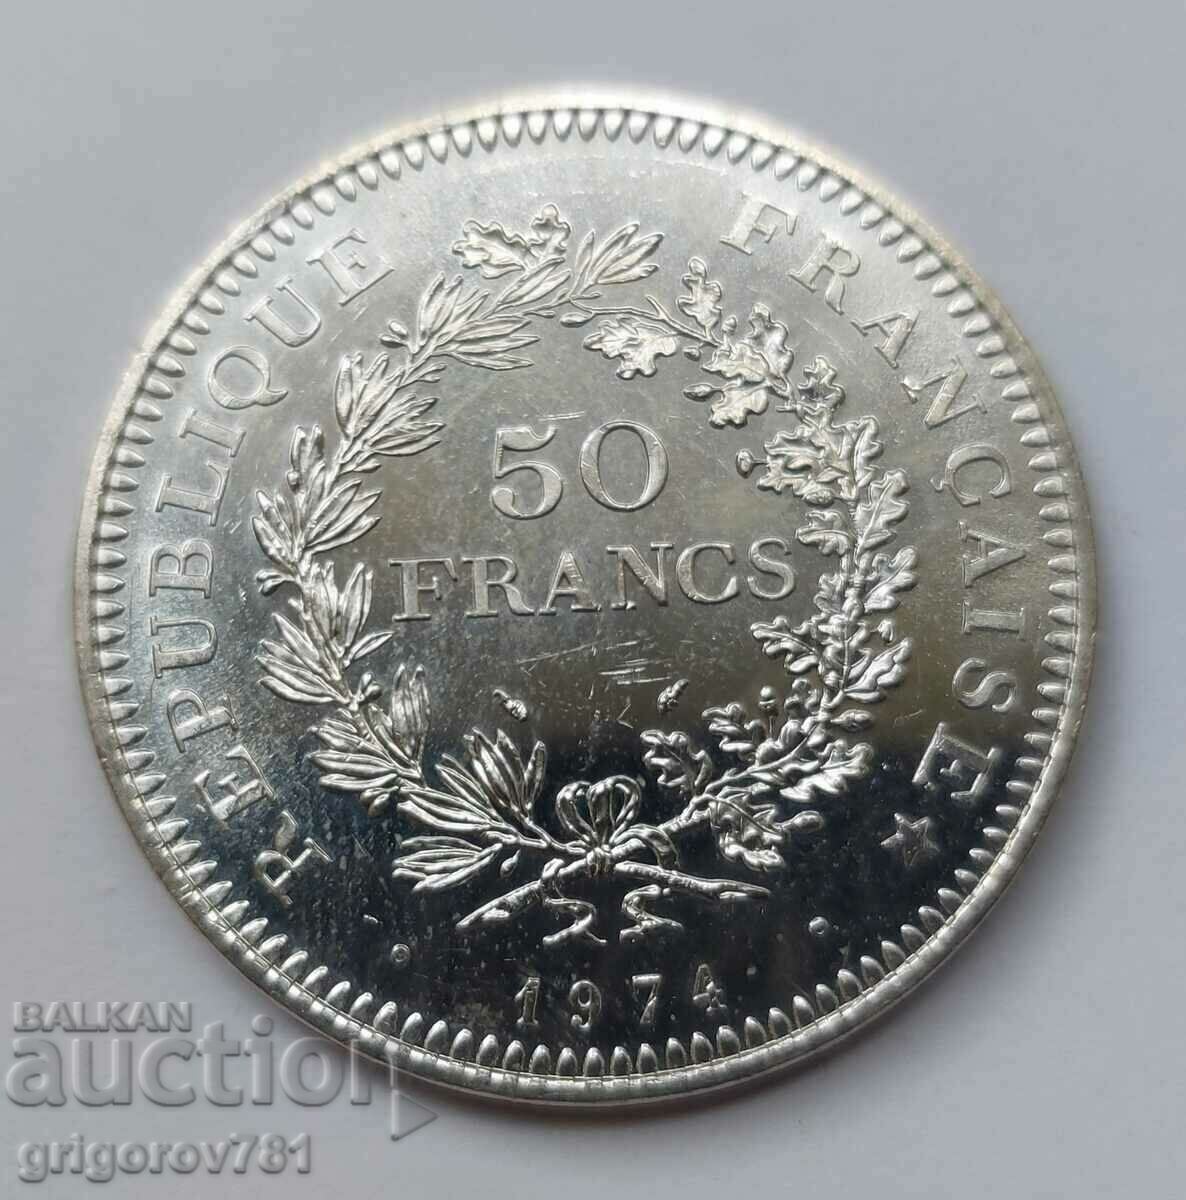 Ασήμι 50 φράγκων Γαλλία 1974 - Ασημένιο νόμισμα #8